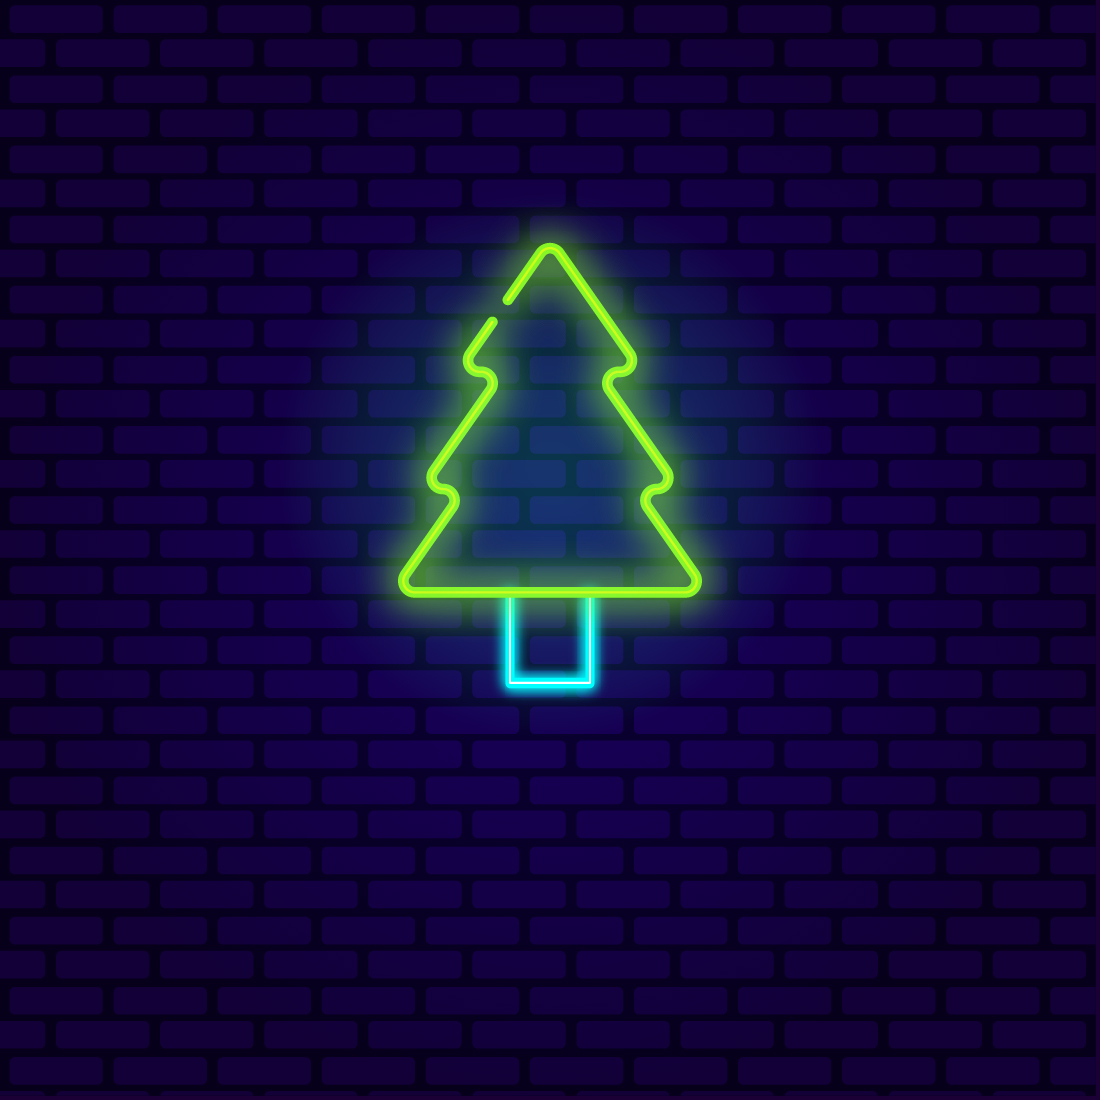 Neon Christmas Tree cover image.